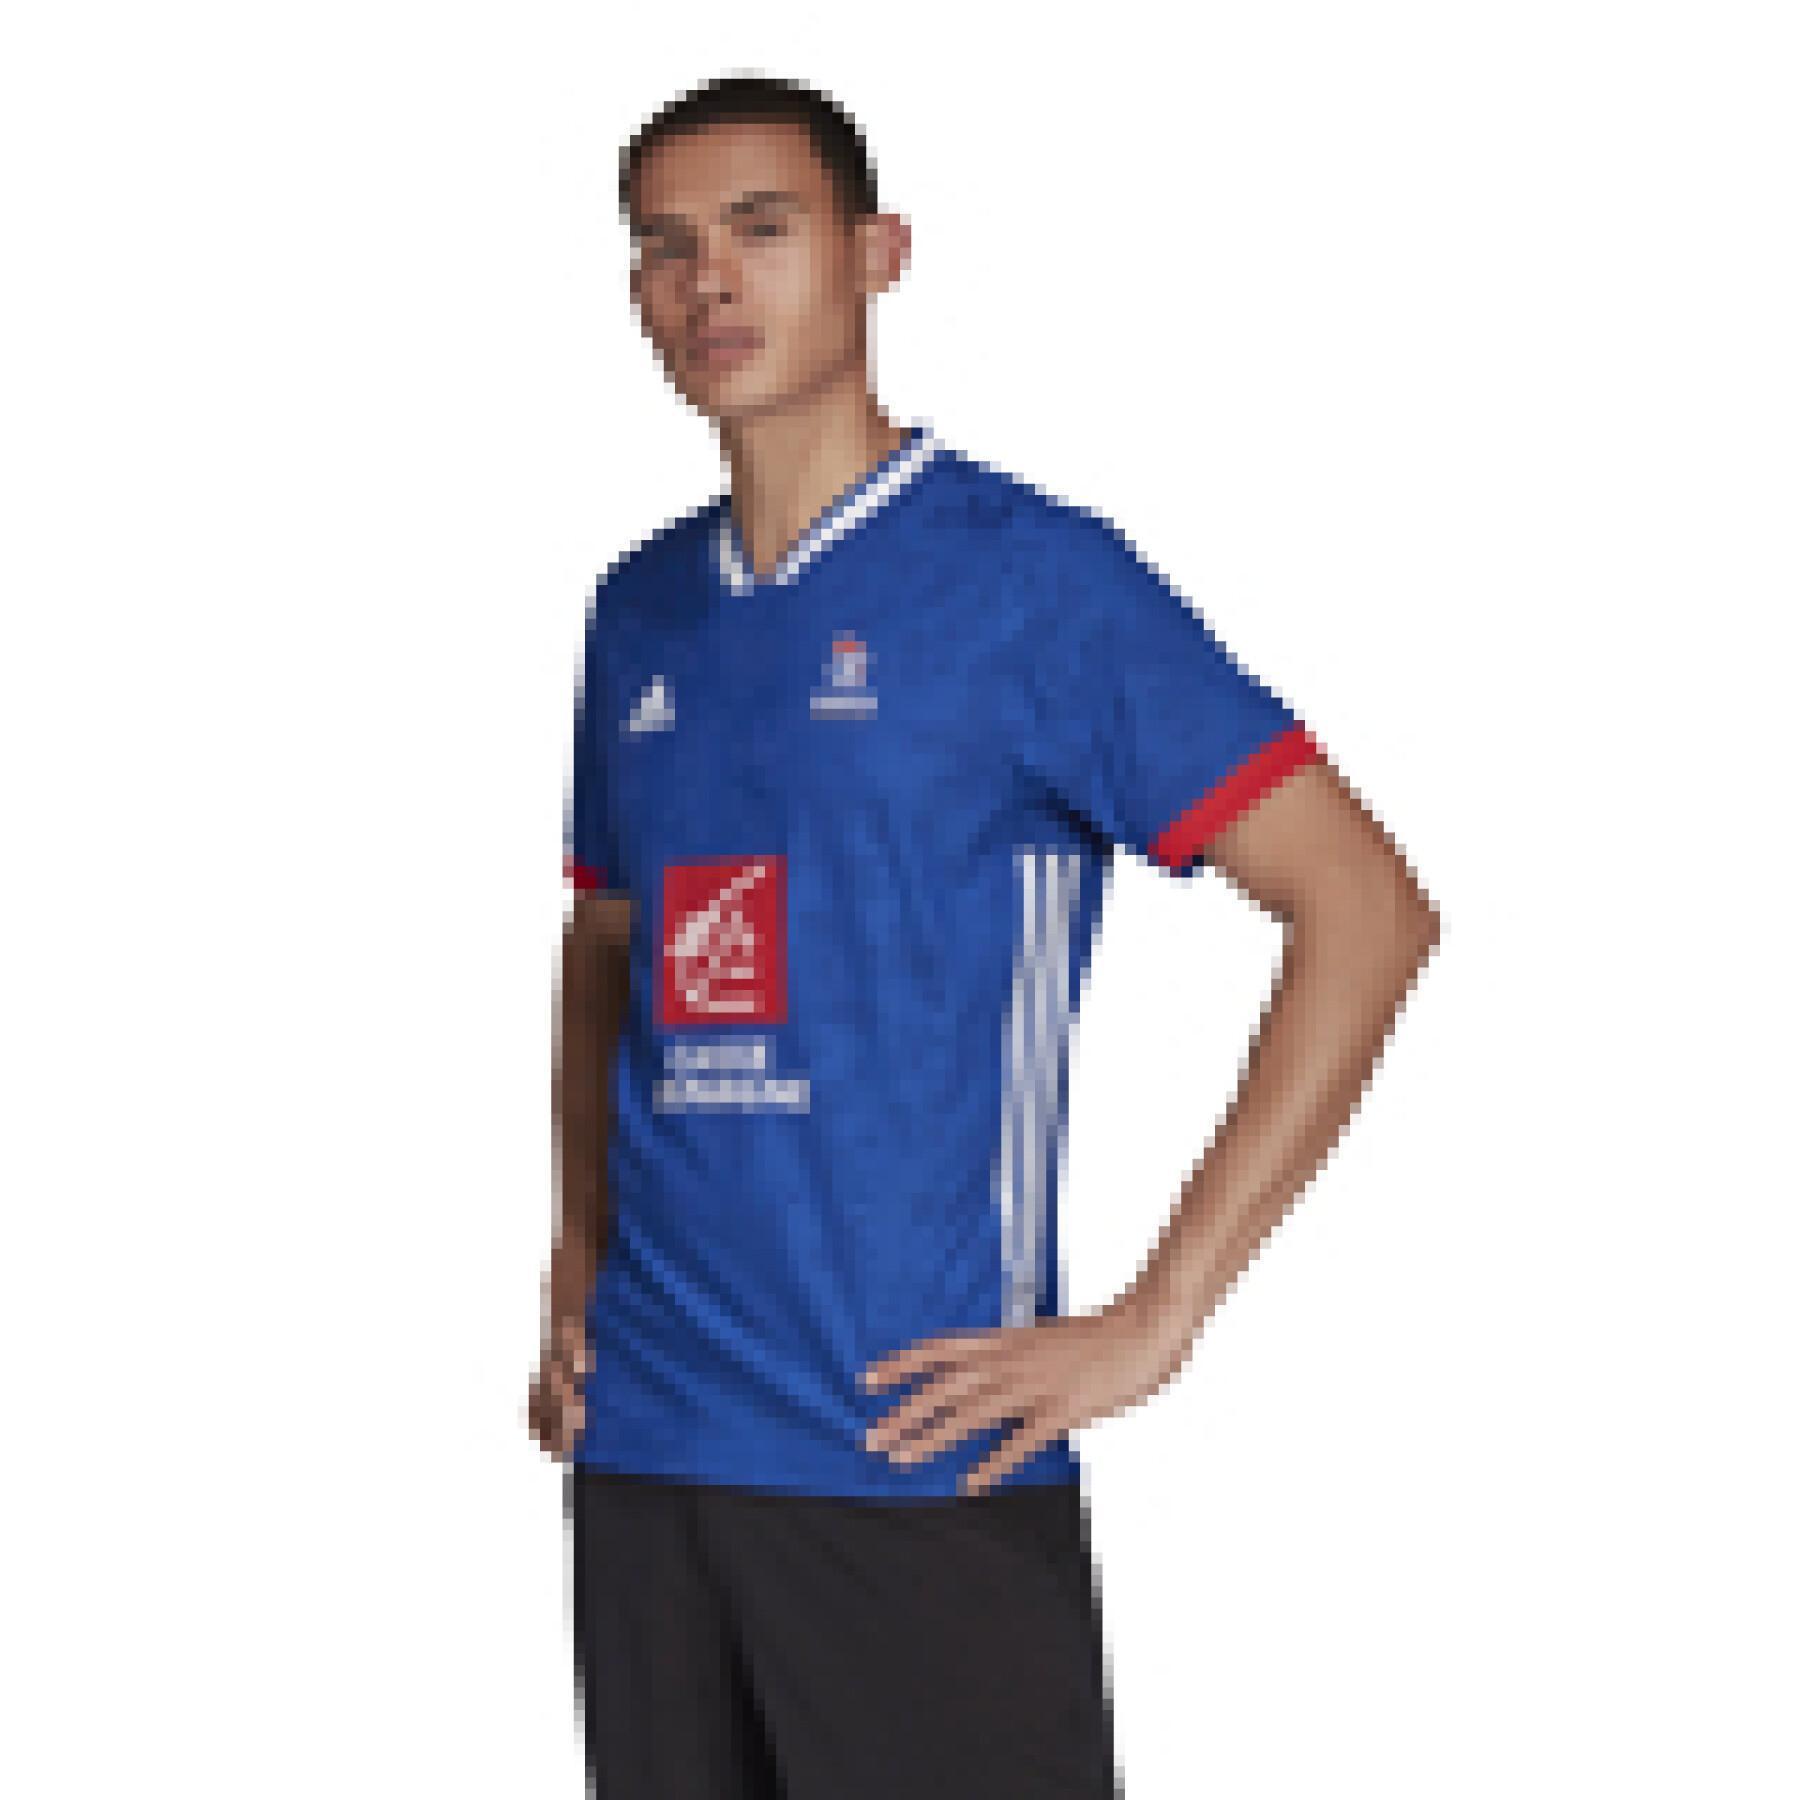 Trikot France Handball Replica 2021/22